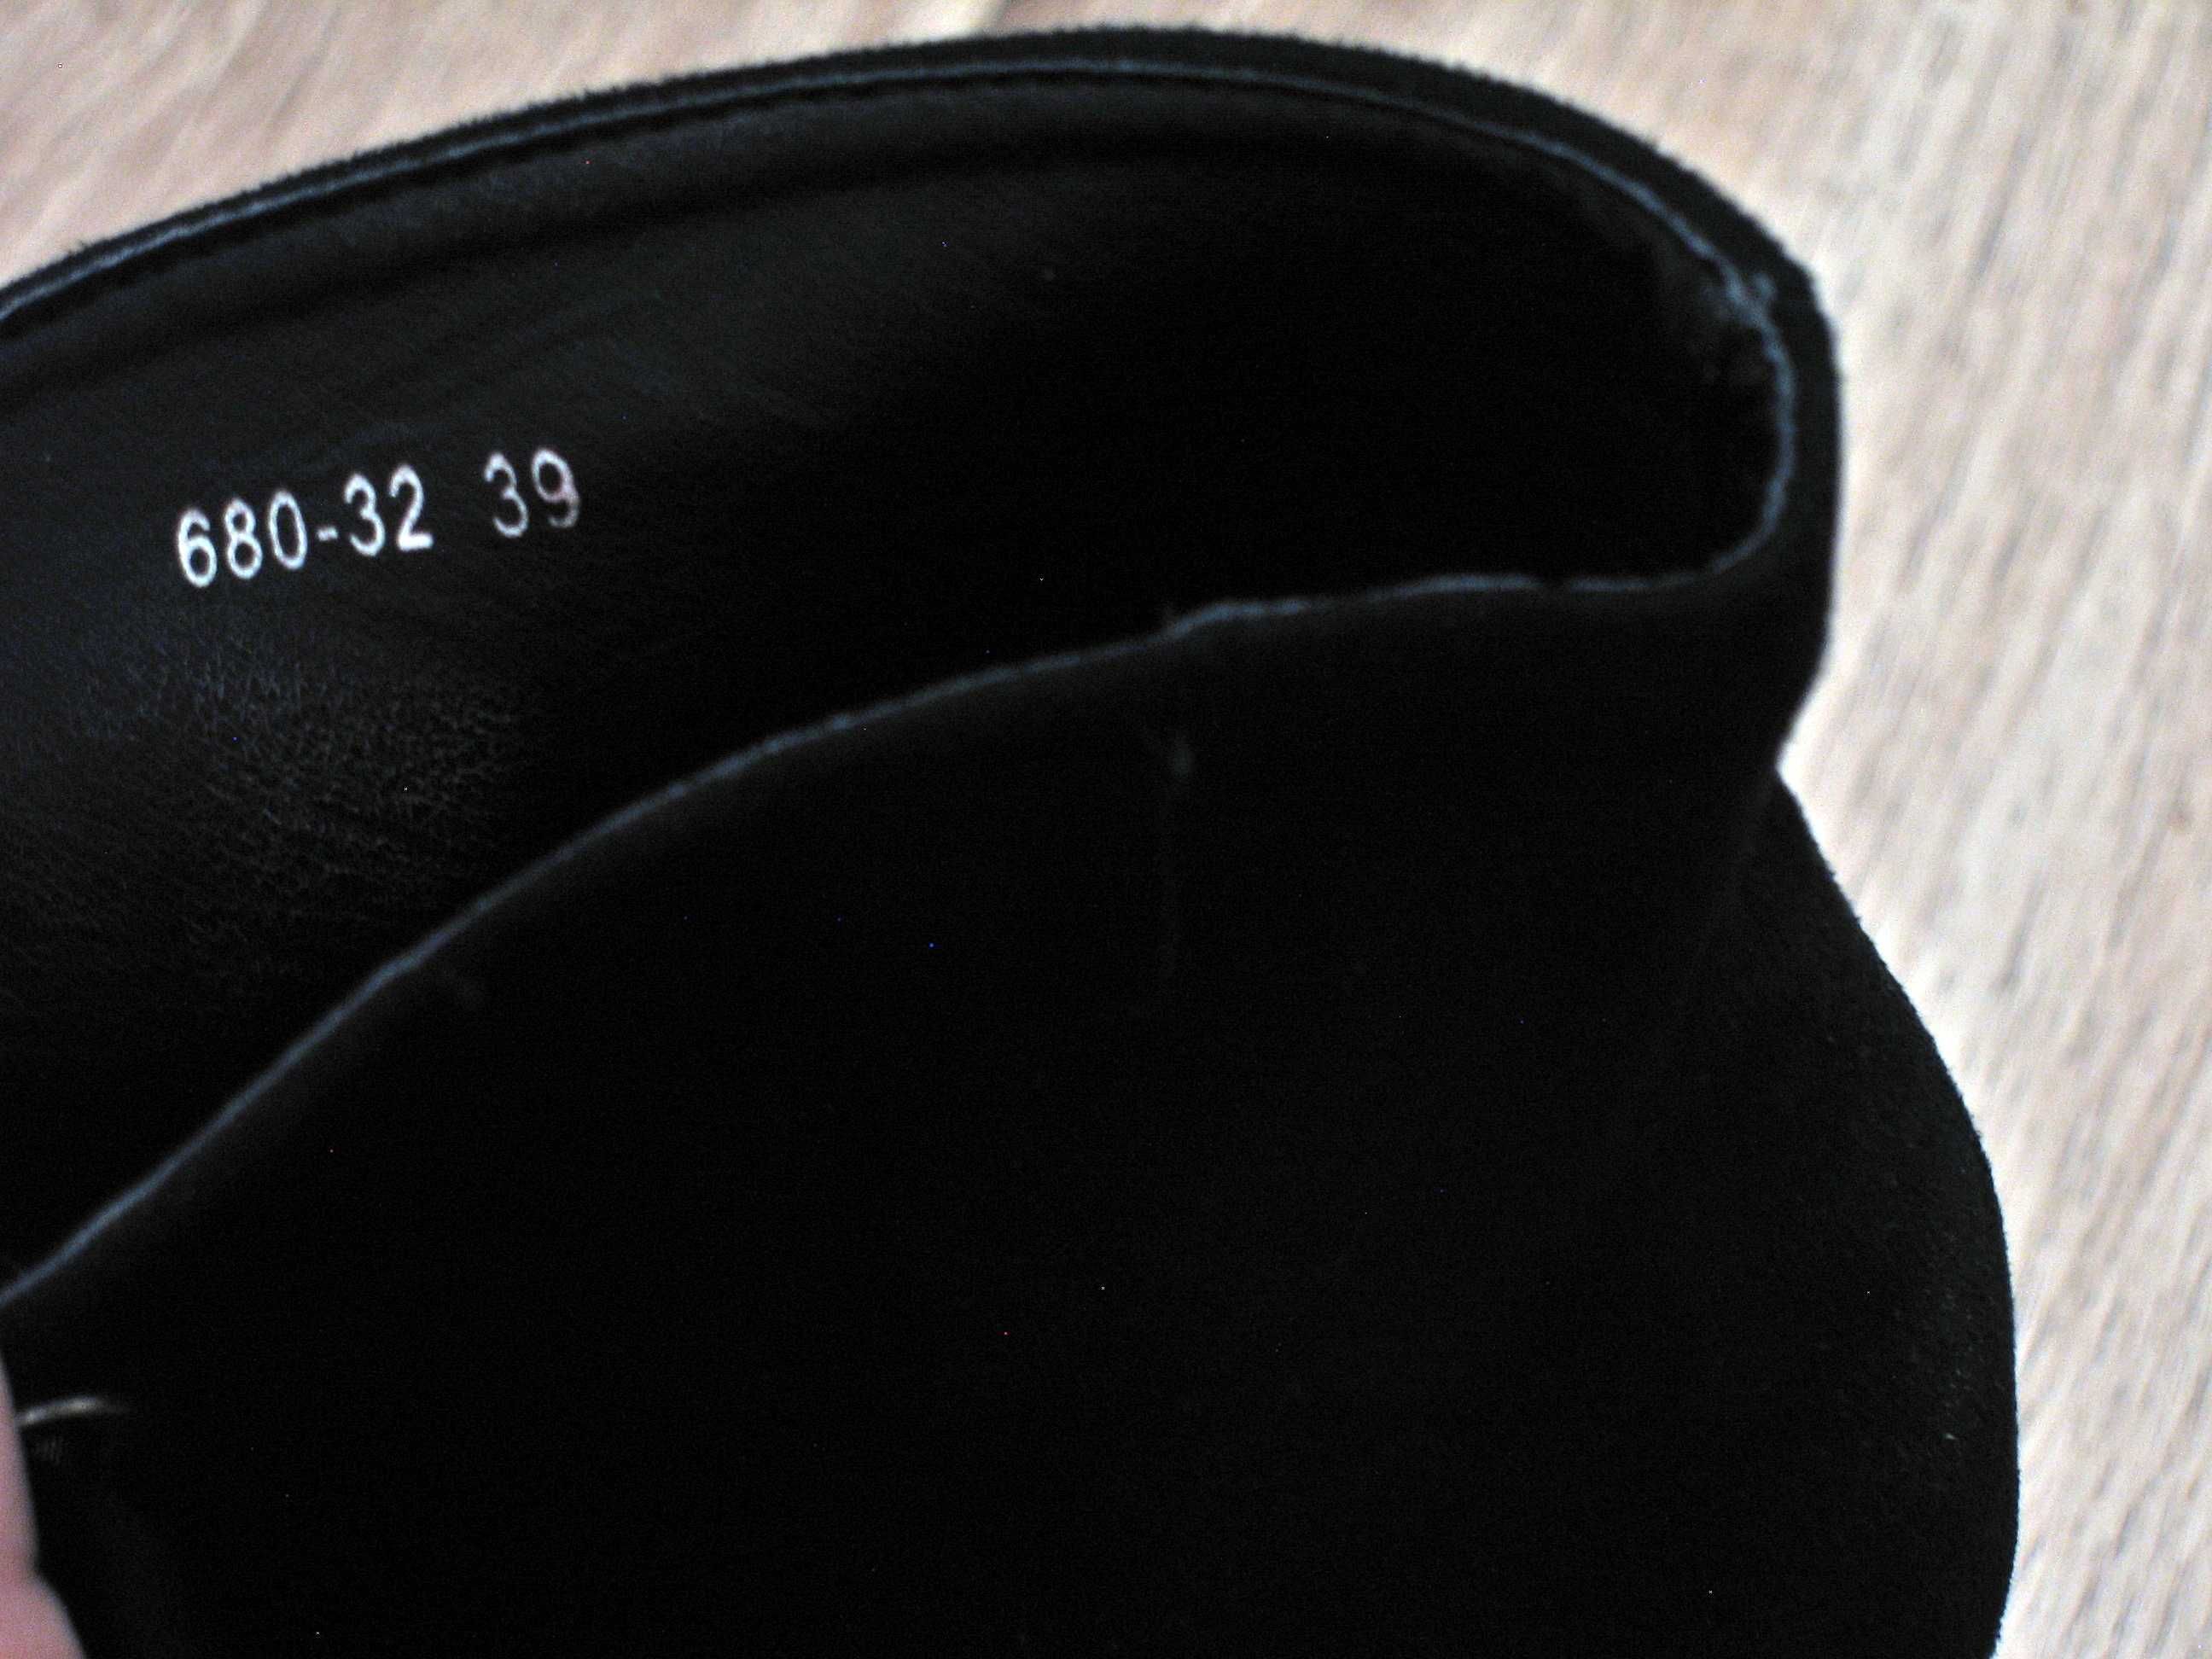 Czarne buty Bestelle, rozmiar 39, z dużym palcem, nubuk, używane